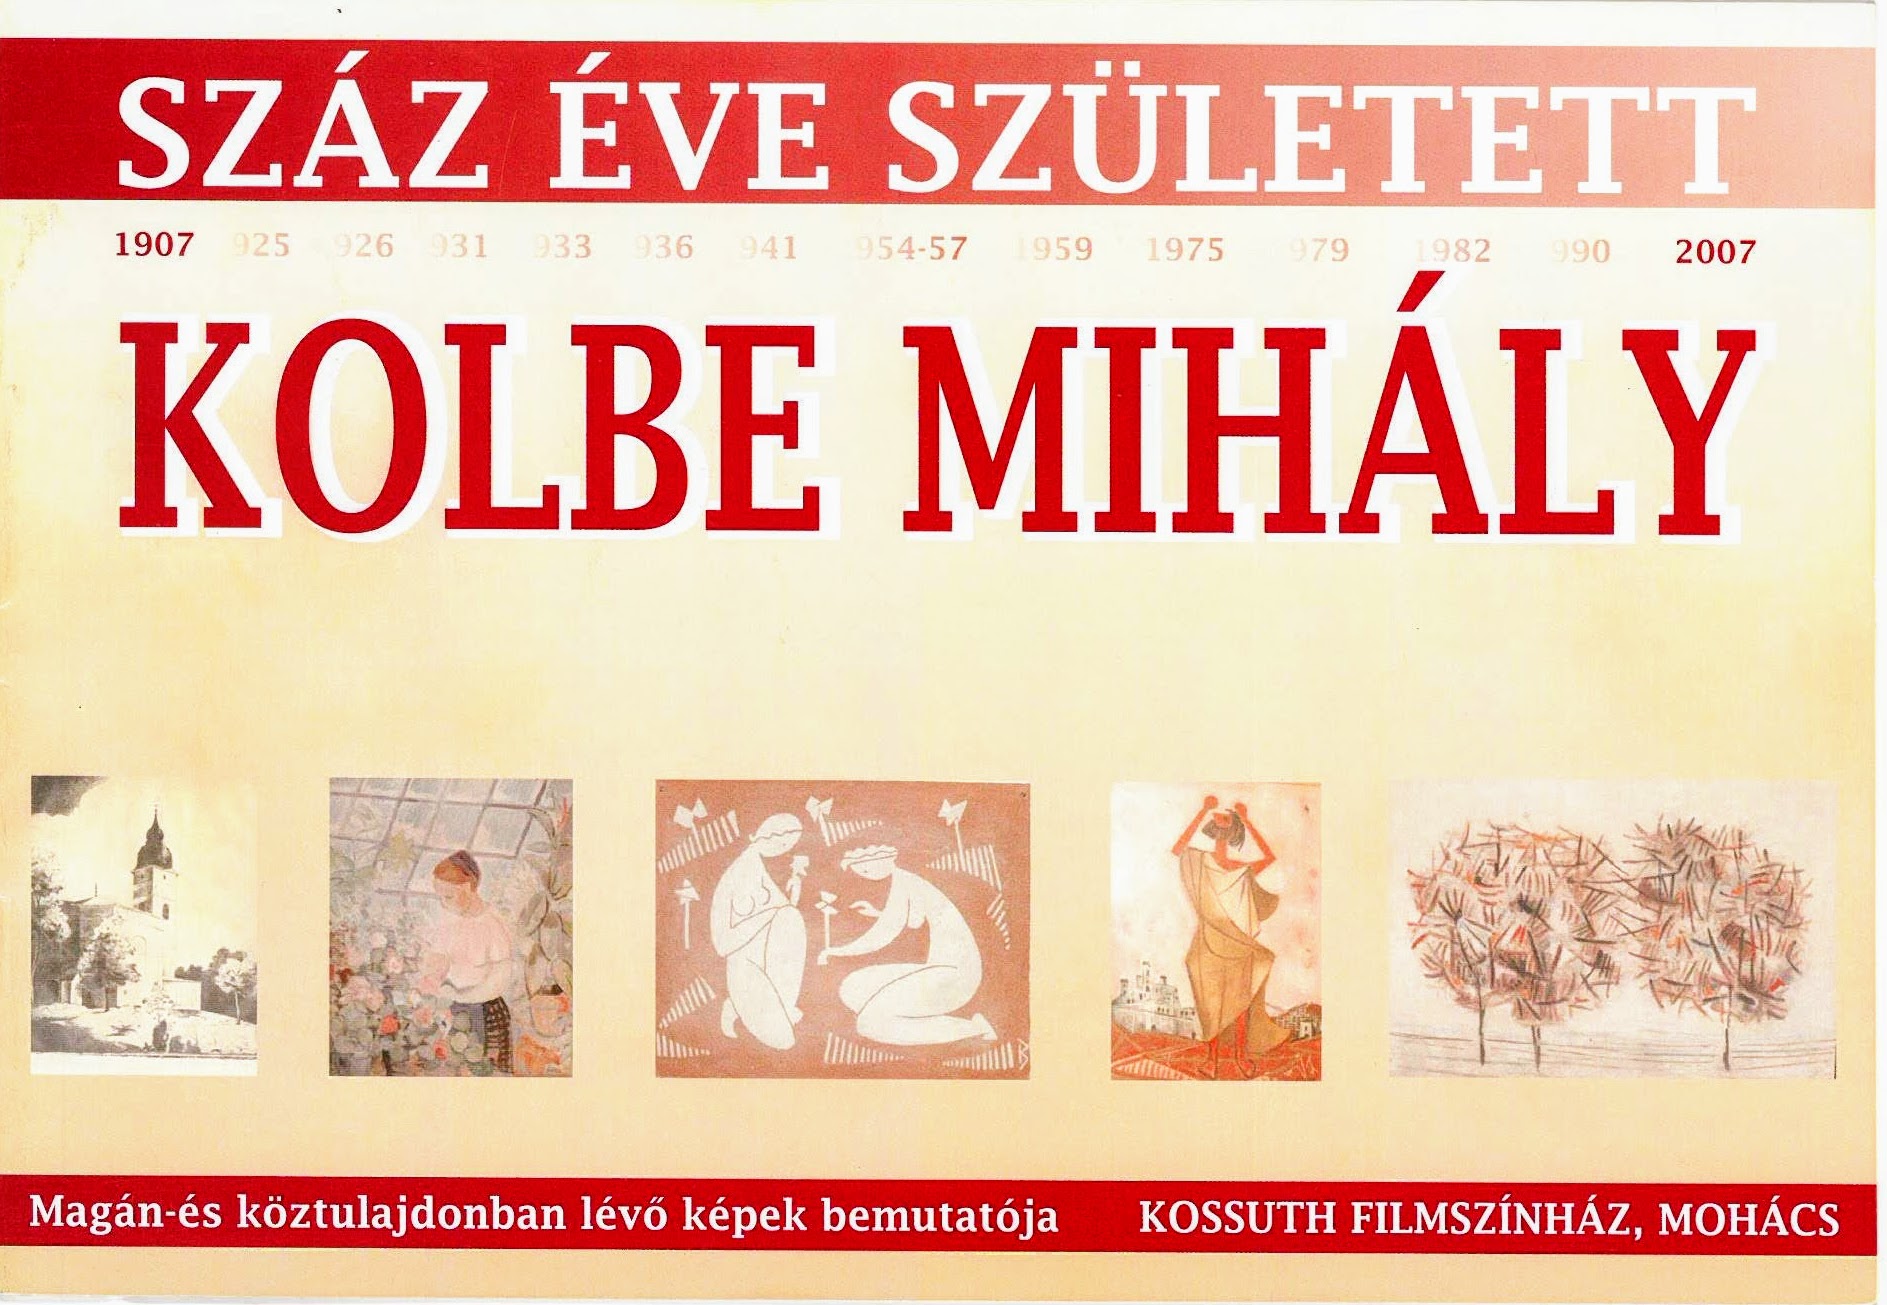 Száz éve született Kolbe Mihály&lt;br /&gt;Jubileumi kiállítás, 2007 Mohács&lt;br /&gt;Az emlékkiállítást szervezte és rendezte: Köveskuti Péter és Szökőcs Béla&lt;br /&gt;Katalógus szövegét írta: Varga Zsuzsa művészettörténész&lt;br /&gt;A kiadvány szerkesztette: Szökőcs Béla&lt;br /&gt;Felelős kiadó: Mohács Város Önkormányzata, Polgármesteri Hivatal. 2007&lt;br /&gt;Készült: 500 példányban